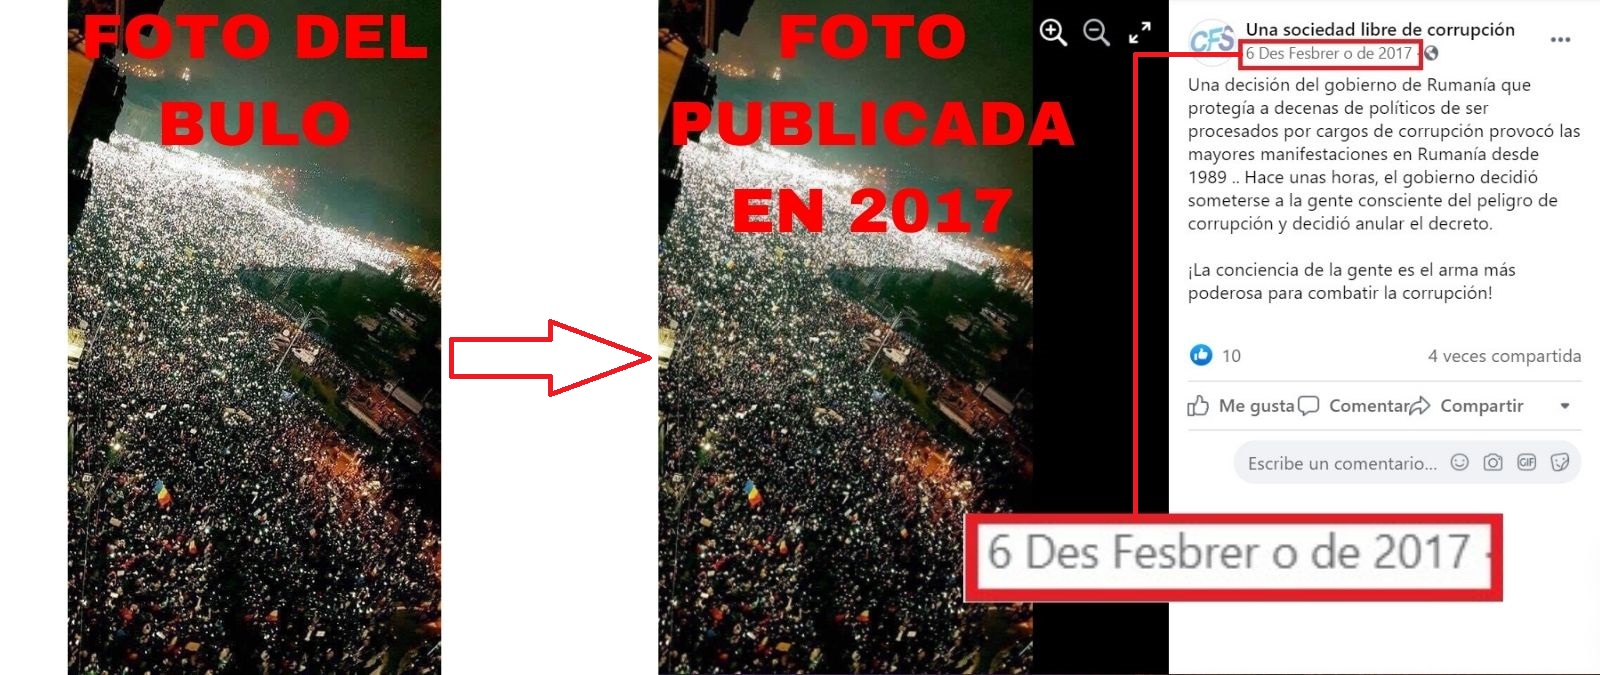 Comparación entre la foto del bulo y la publicación de 2017.